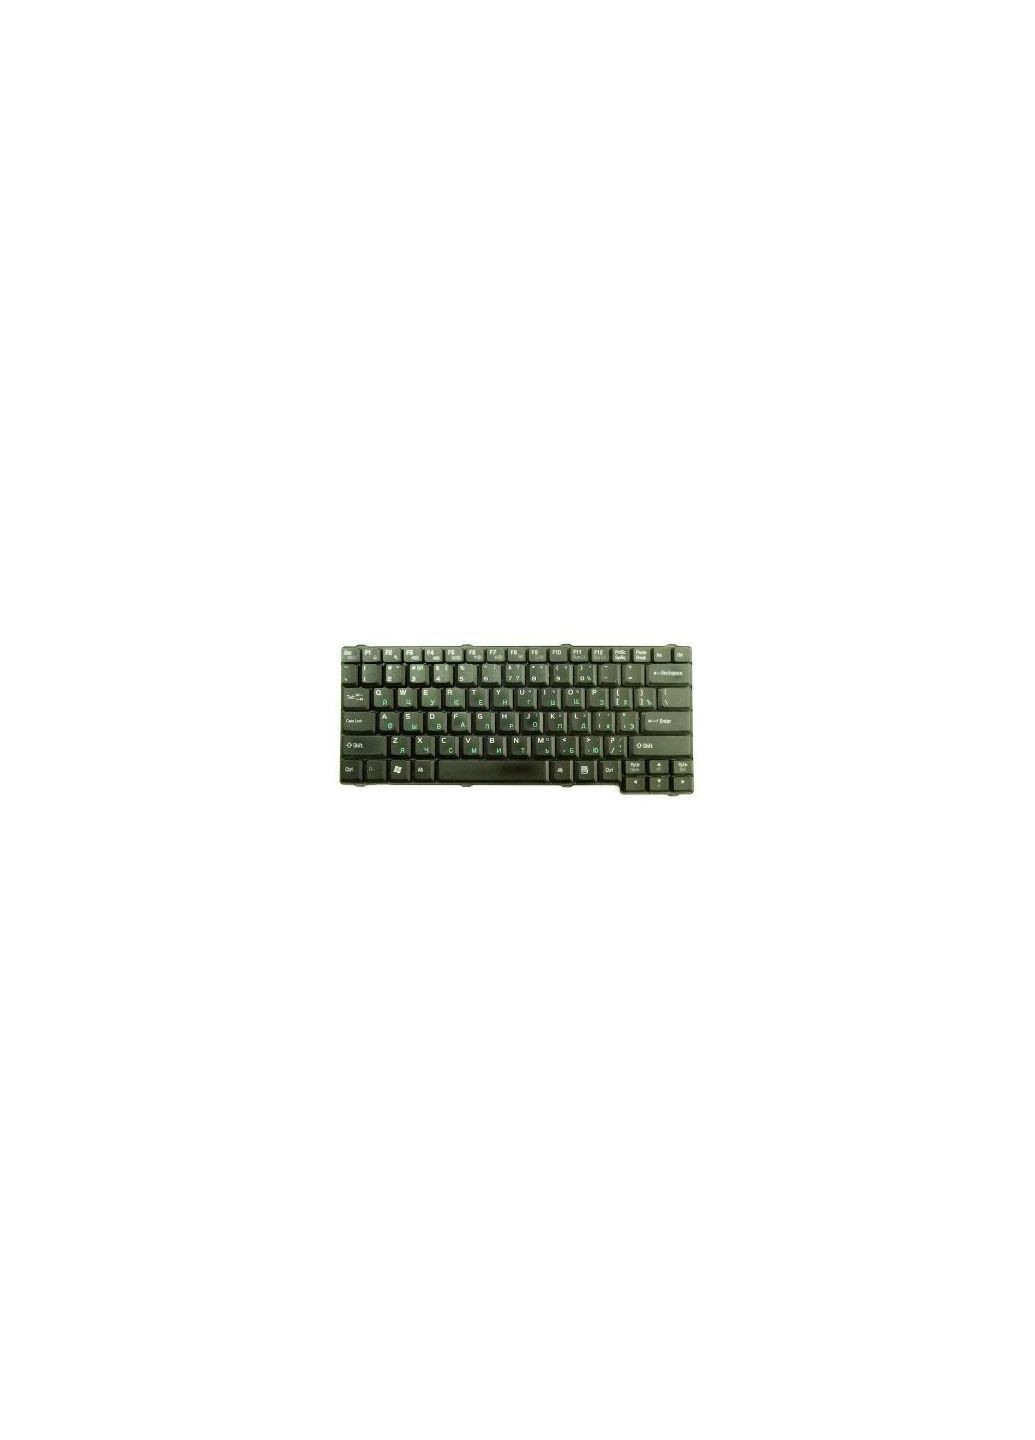 Клавиатура ноутбука MP03263US-9202/V-0208BIDS1-US (A43322) Toshiba mp-03263us-9202/v-0208bids1-us (276707421)